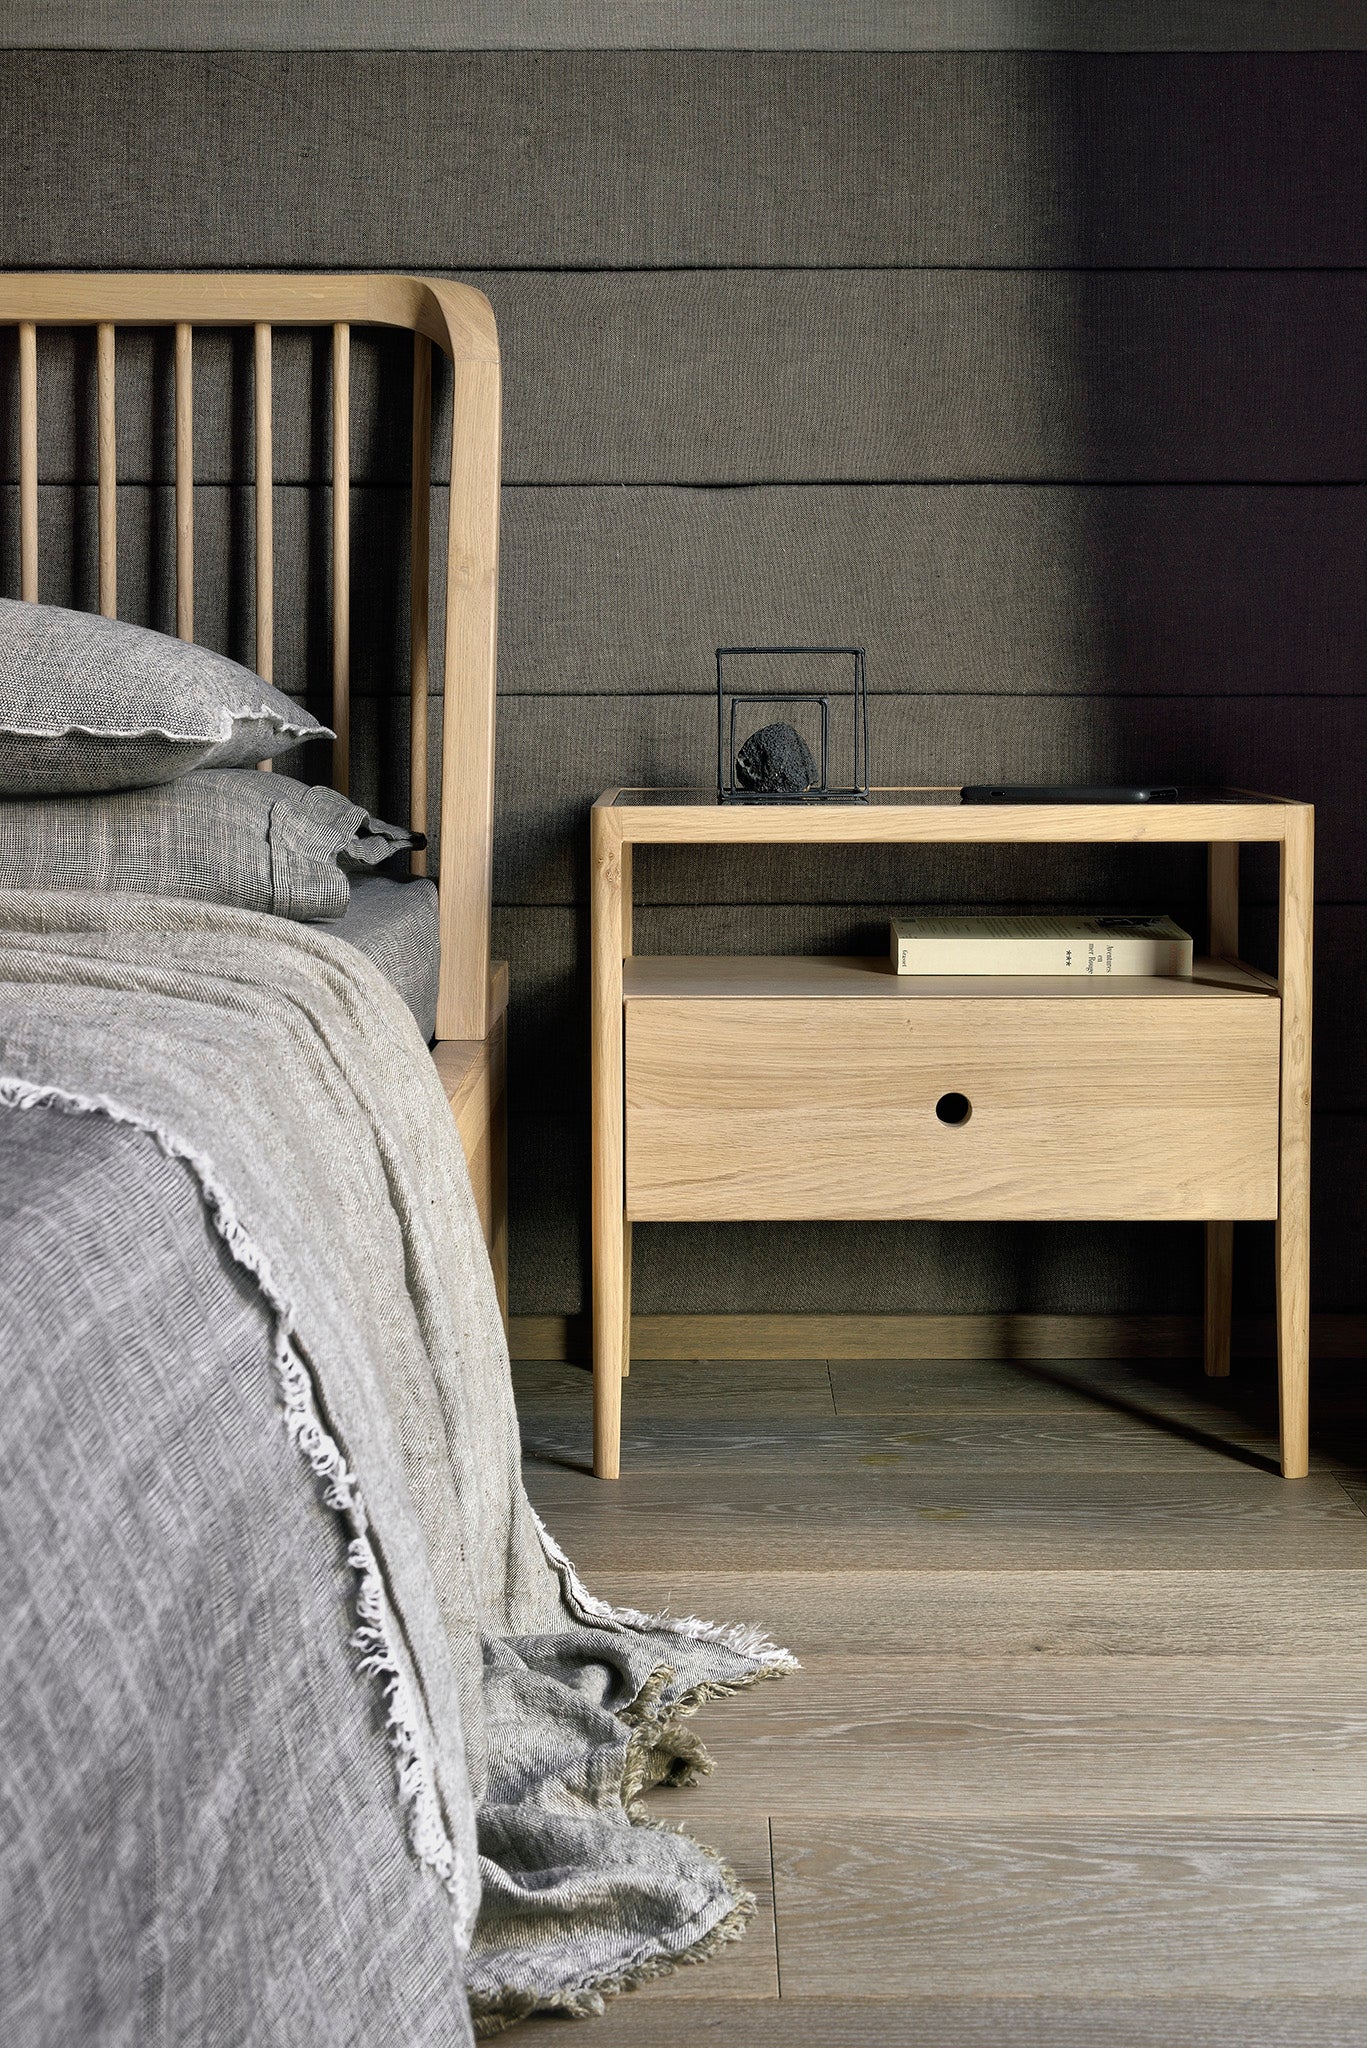 比利時原裝進口實木傢俬 - 臥室系列 - Spindle系列橡木床